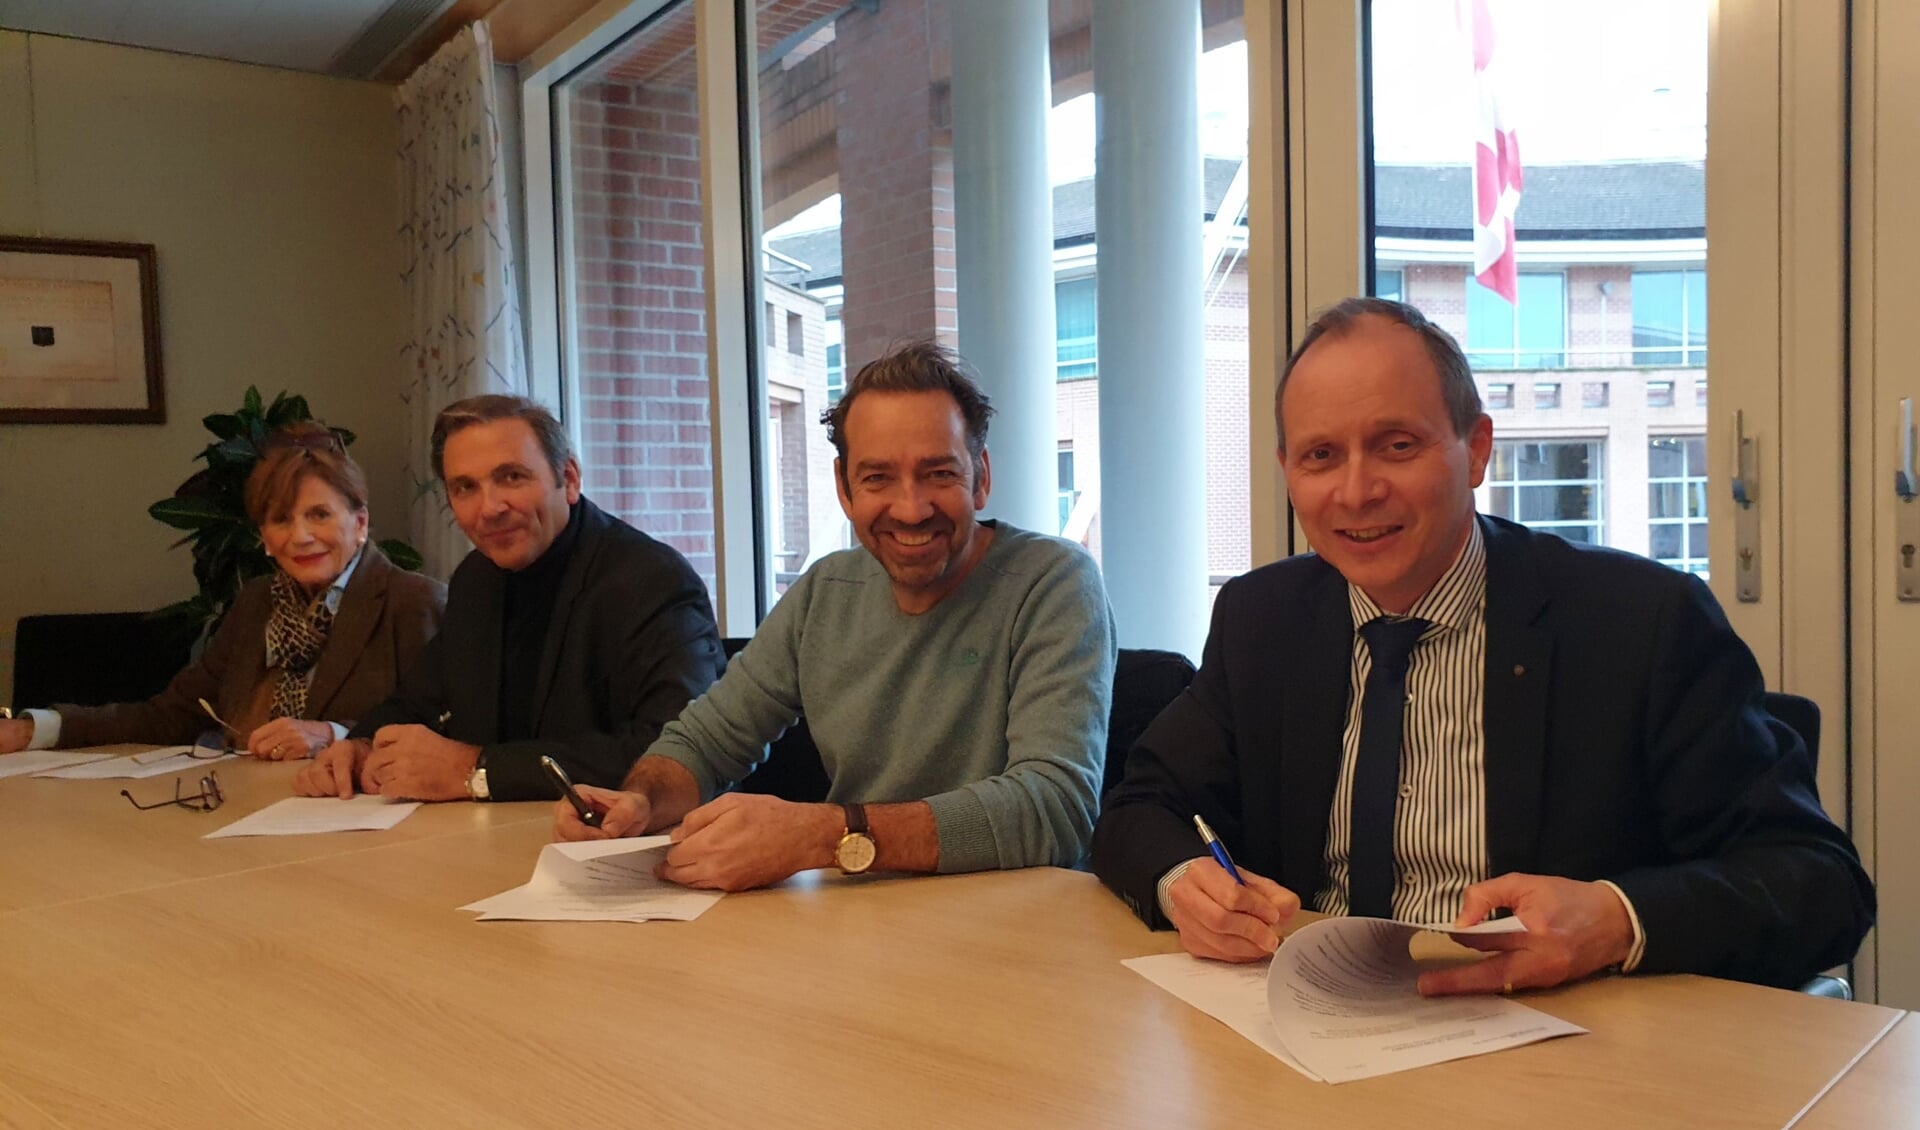 Vlnr: Mascha Jonkers, Hein en Max Jonkers (firma Jonkers) en burgemeester Anton Ederveen van de gemeente Valkenswaard.